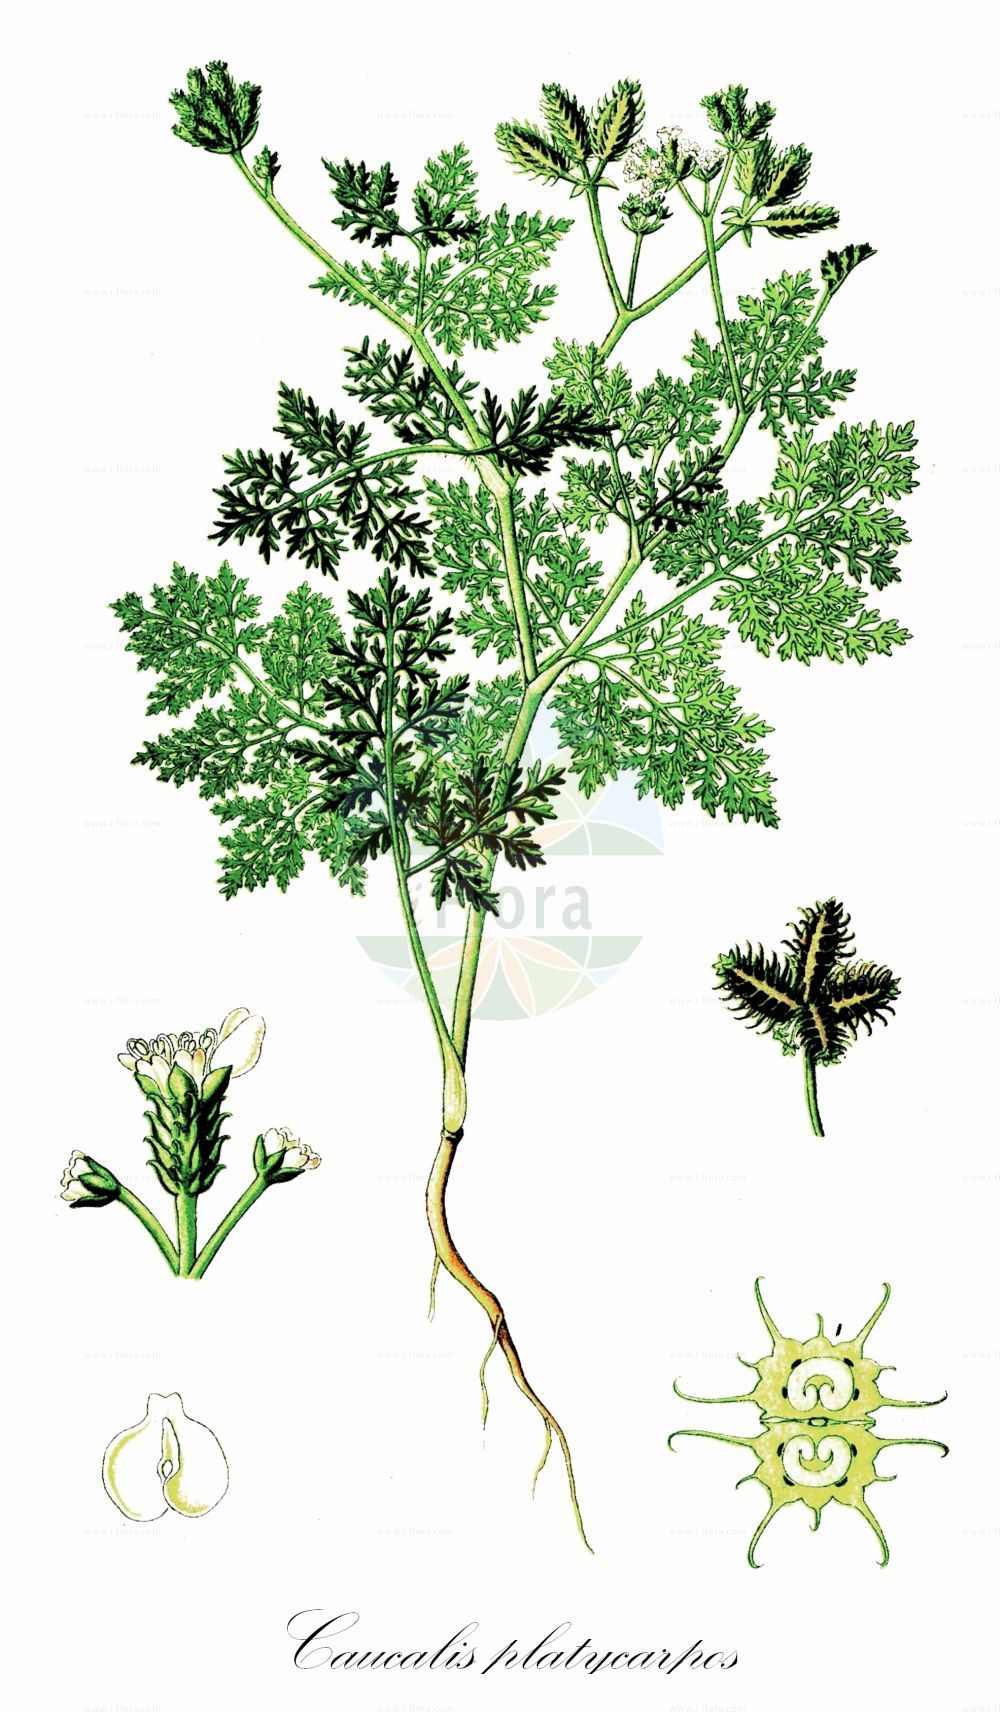 Historische Abbildung von Caucalis platycarpos (Acker-Haftdolde - Small Bur-parsley). Das Bild zeigt Blatt, Bluete, Frucht und Same. ---- Historical Drawing of Caucalis platycarpos (Acker-Haftdolde - Small Bur-parsley). The image is showing leaf, flower, fruit and seed.(Caucalis platycarpos,Acker-Haftdolde,Small Bur-parsley,Caucalis bischoffii,Caucalis daucoides,Caucalis lappula,Caucalis muricata,Caucalis platycarpos,Caucalis platycarpos subsp. muricata,Acker-Haftdolde,Gewoehnliche Acker-Haftdolde,Kurzstachel-Haftdolde,Kurzstachelige Acker-Haftdolde,Langstachel-Haftdolde,Small Bur-parsley,Hedgehog Parsley,Carrot Bur Parsley,Caucalis,Haftdolde,Bur Parsley,Apiaceae,Doldengewächse,Carrot family,Blatt,Bluete,Frucht,Same,leaf,flower,fruit,seed,Thomé (1885))